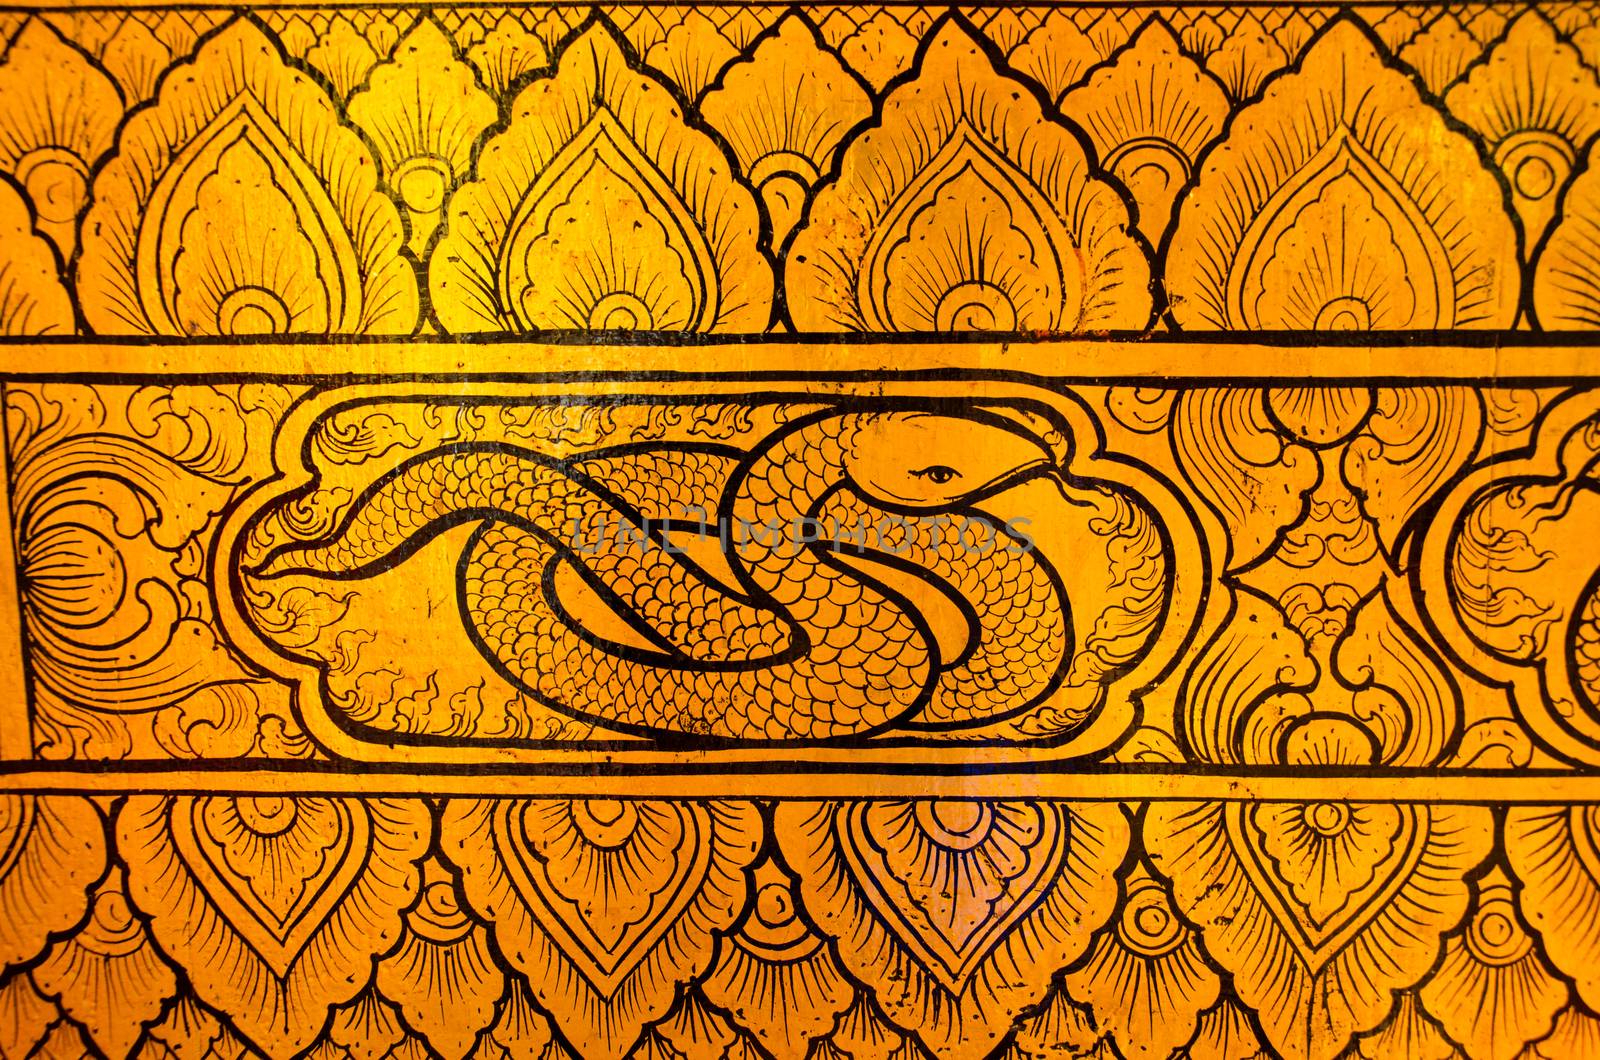 Thai tradional art snake